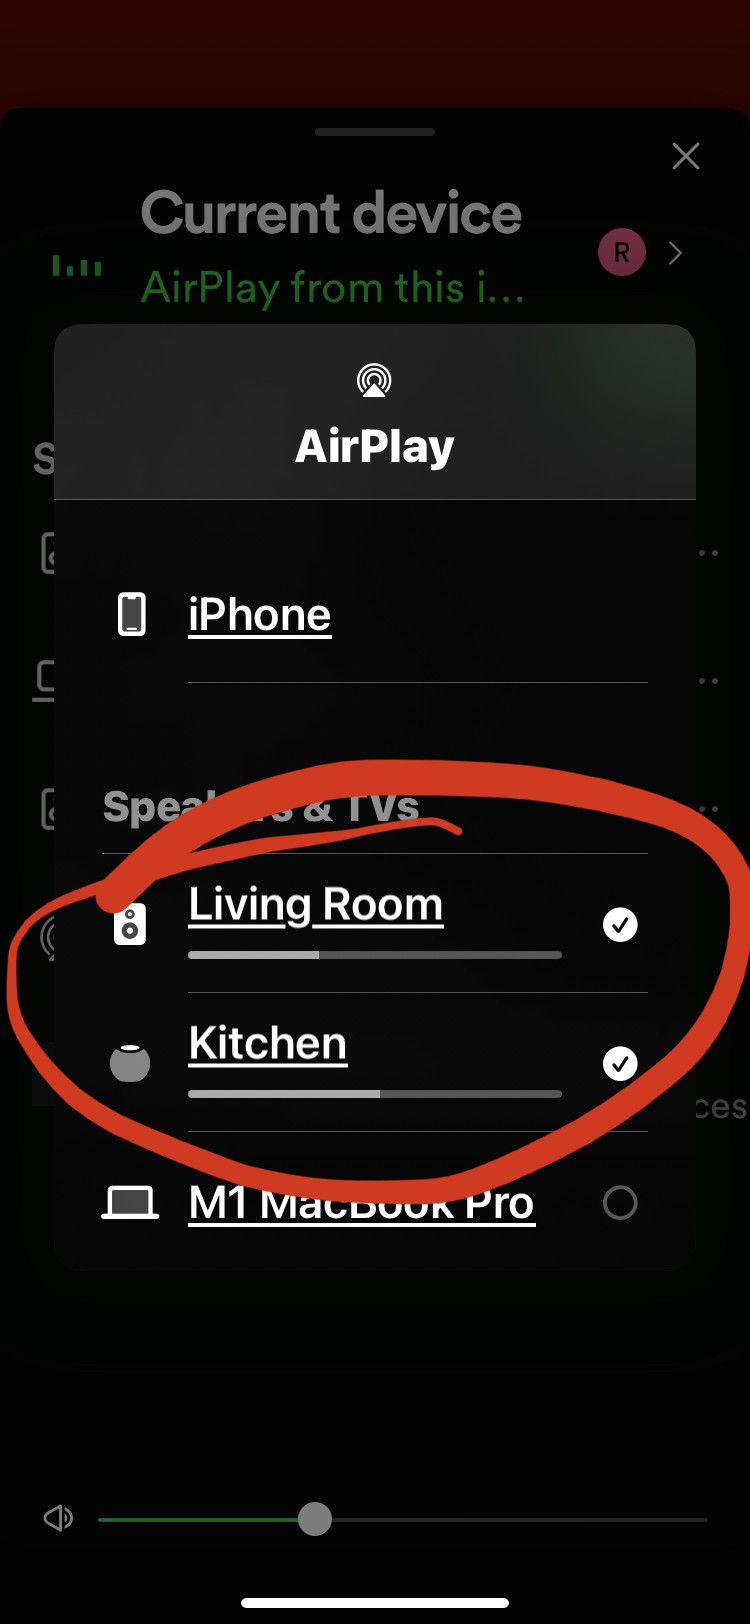 选择 AirPlay 扬声器播放输出到包括HomePod 和 Sonos